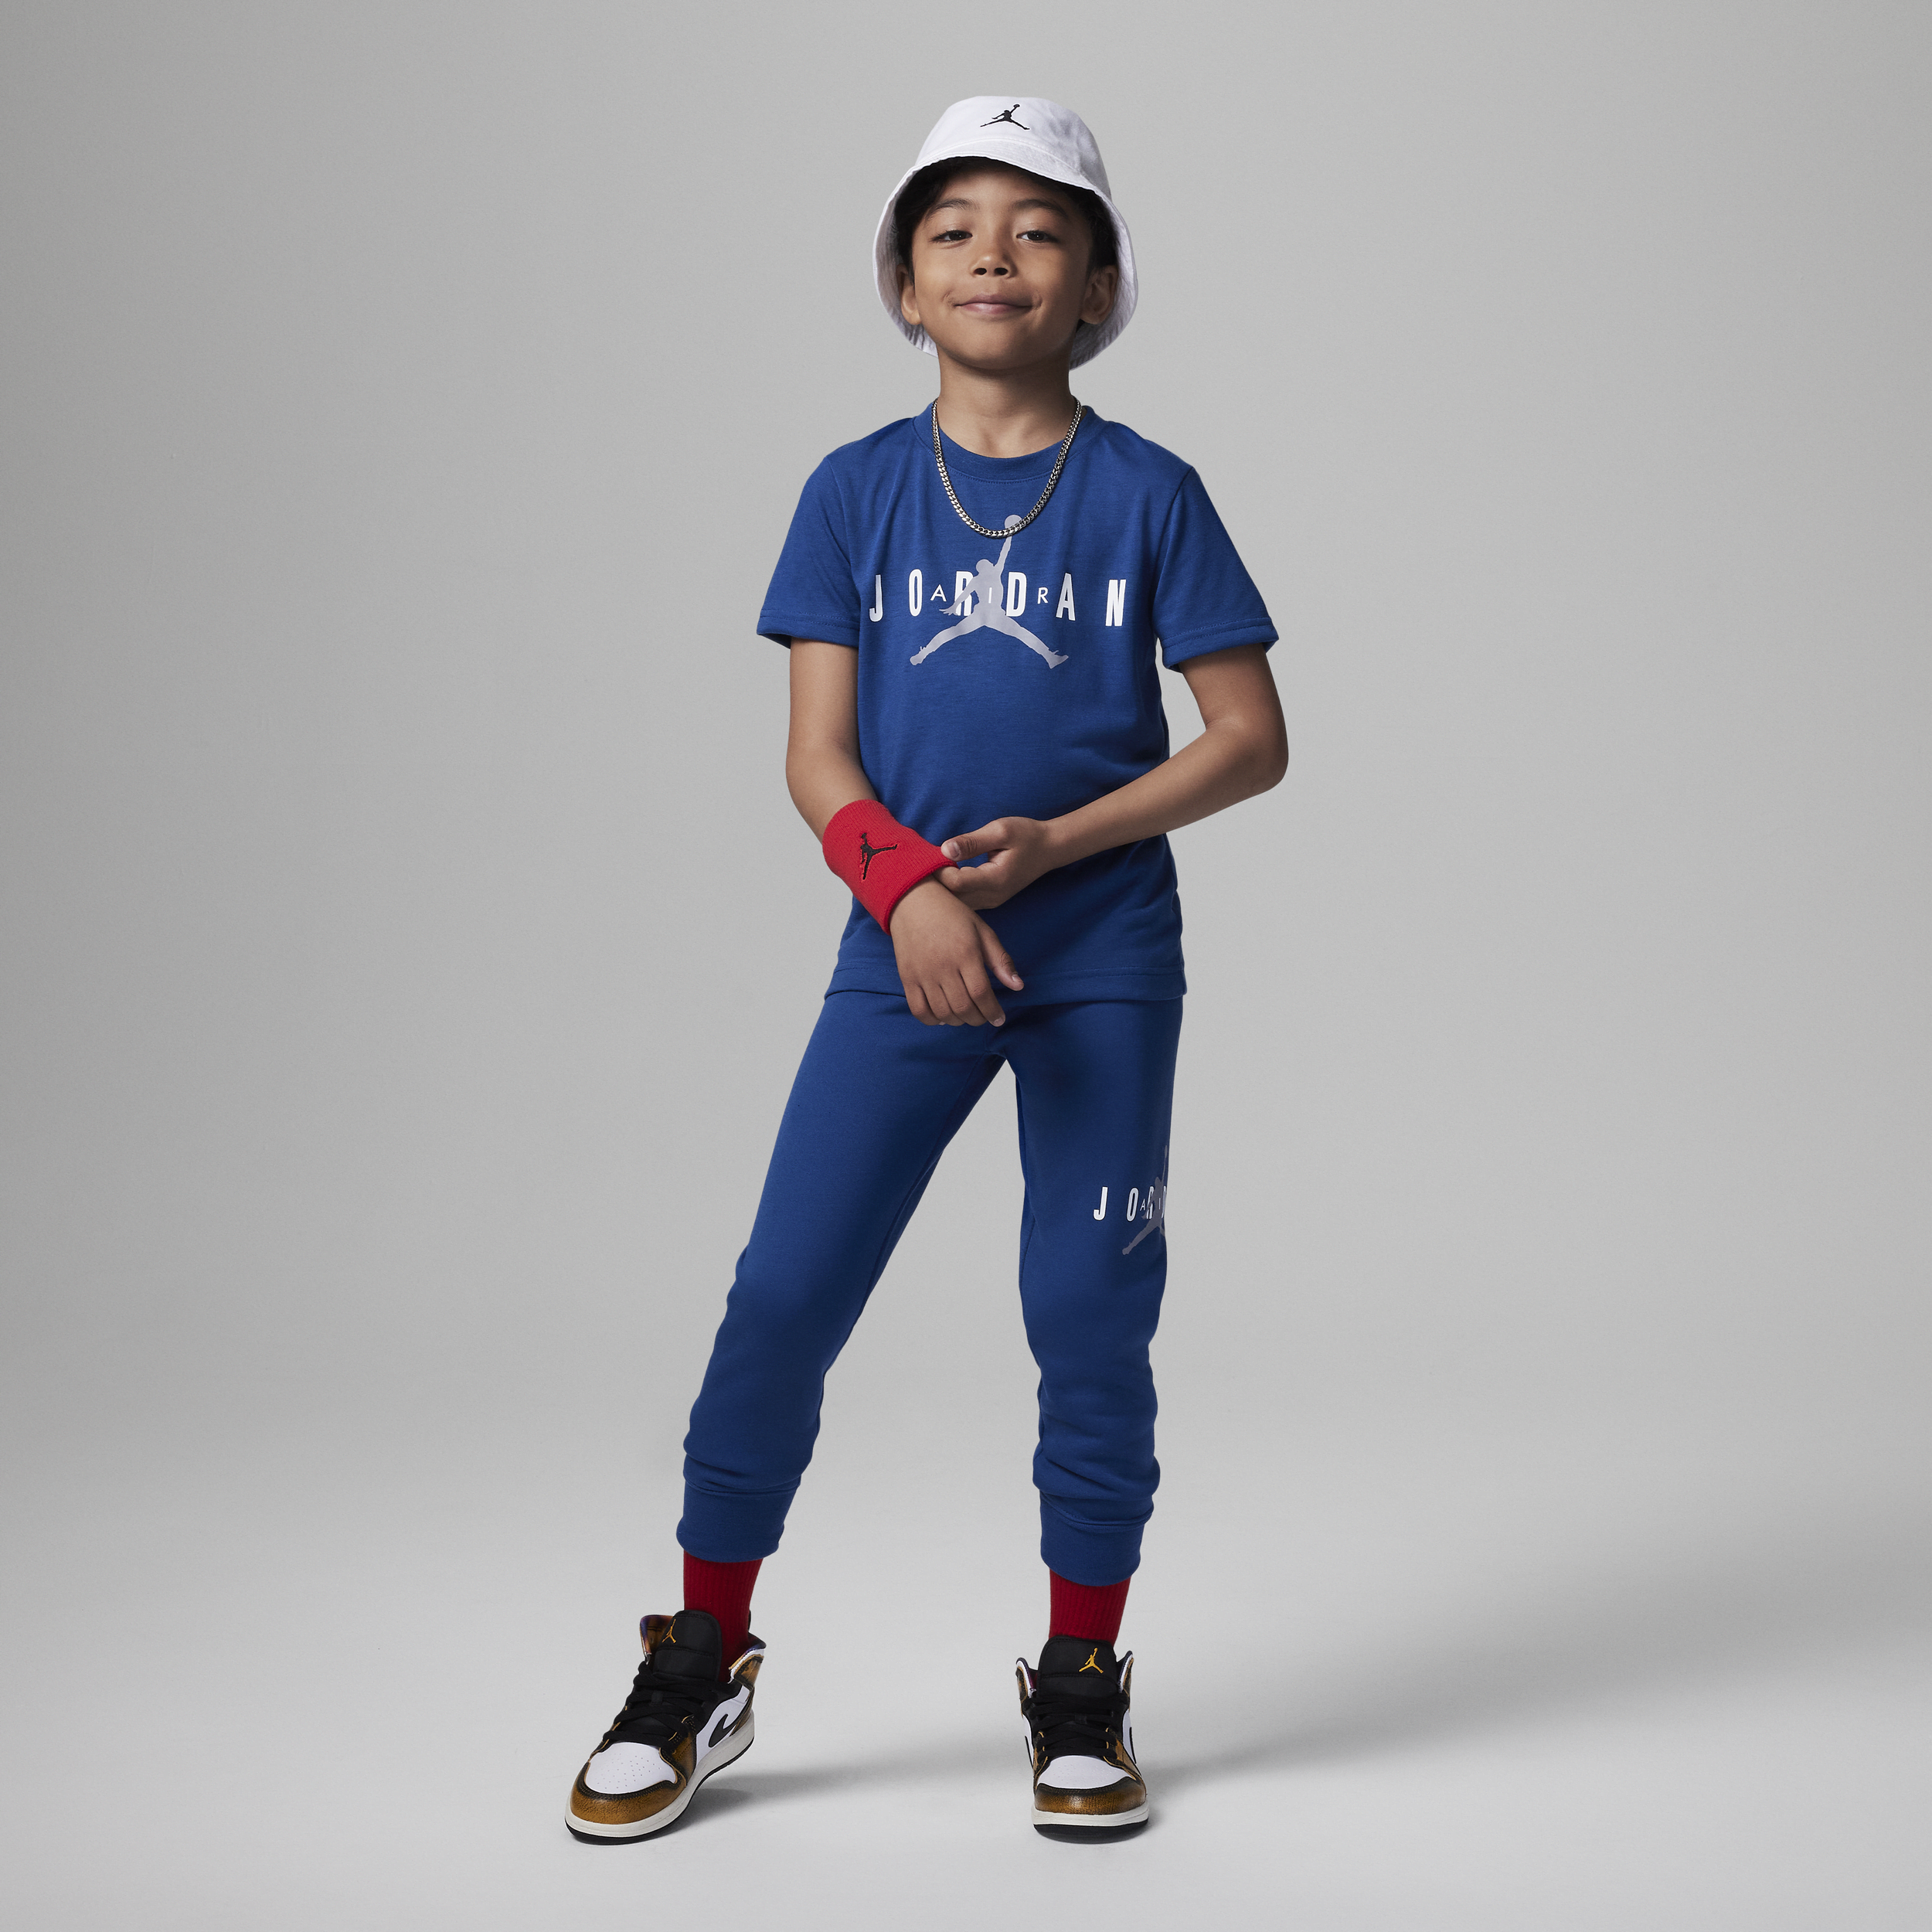 Jordan Jumpman duurzame kleuterset met broek - Blauw